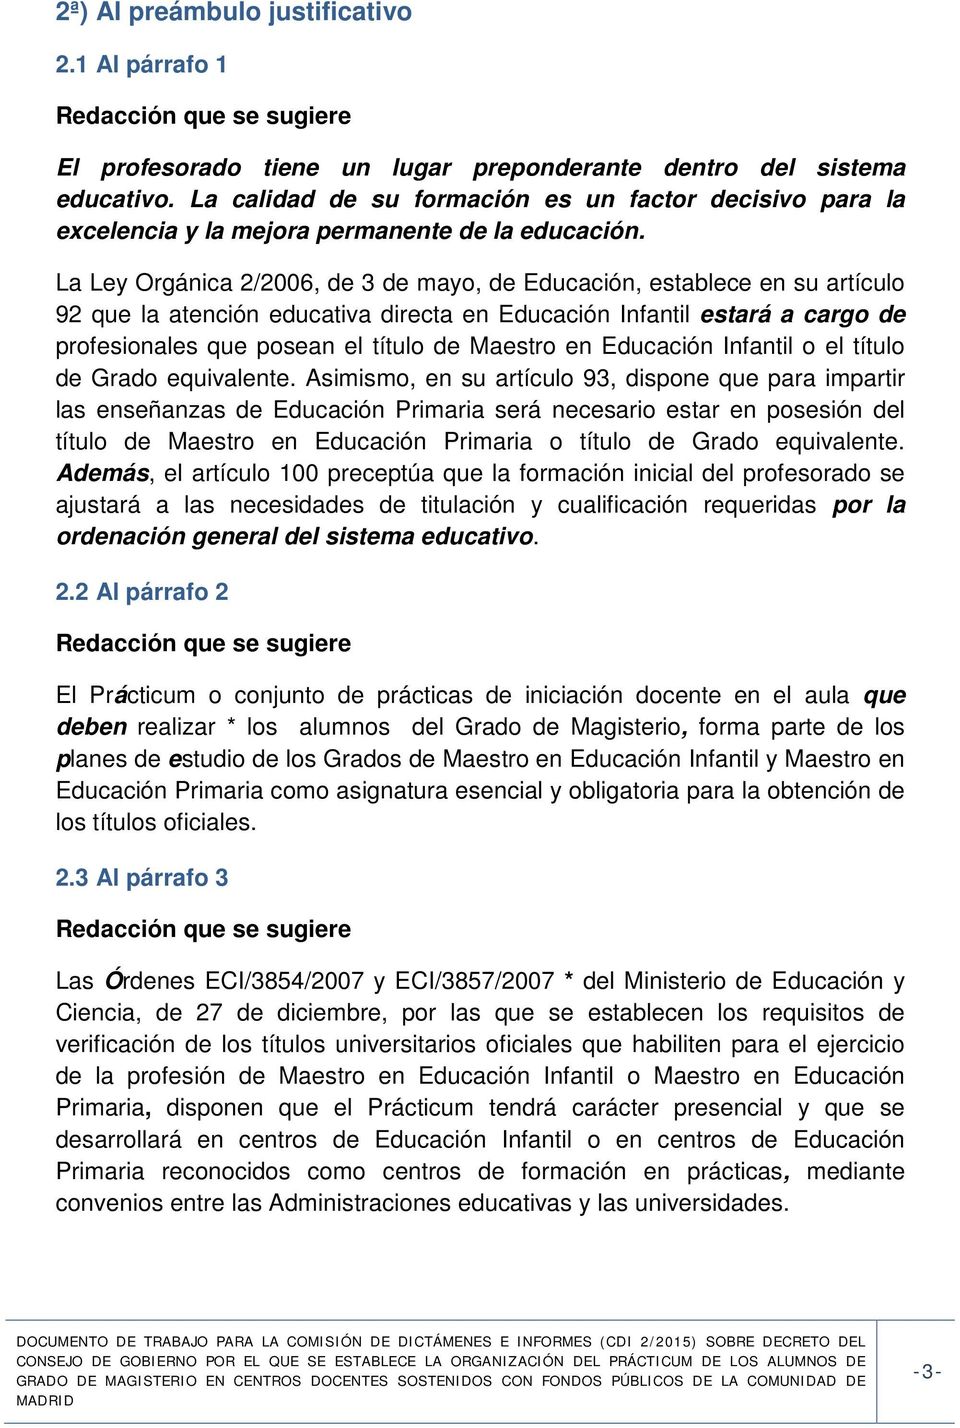 La Ley Orgánica 2/2006, de 3 de mayo, de Educación, establece en su artículo 92 que la atención educativa directa en Educación Infantil estará a cargo de profesionales que posean el título de Maestro